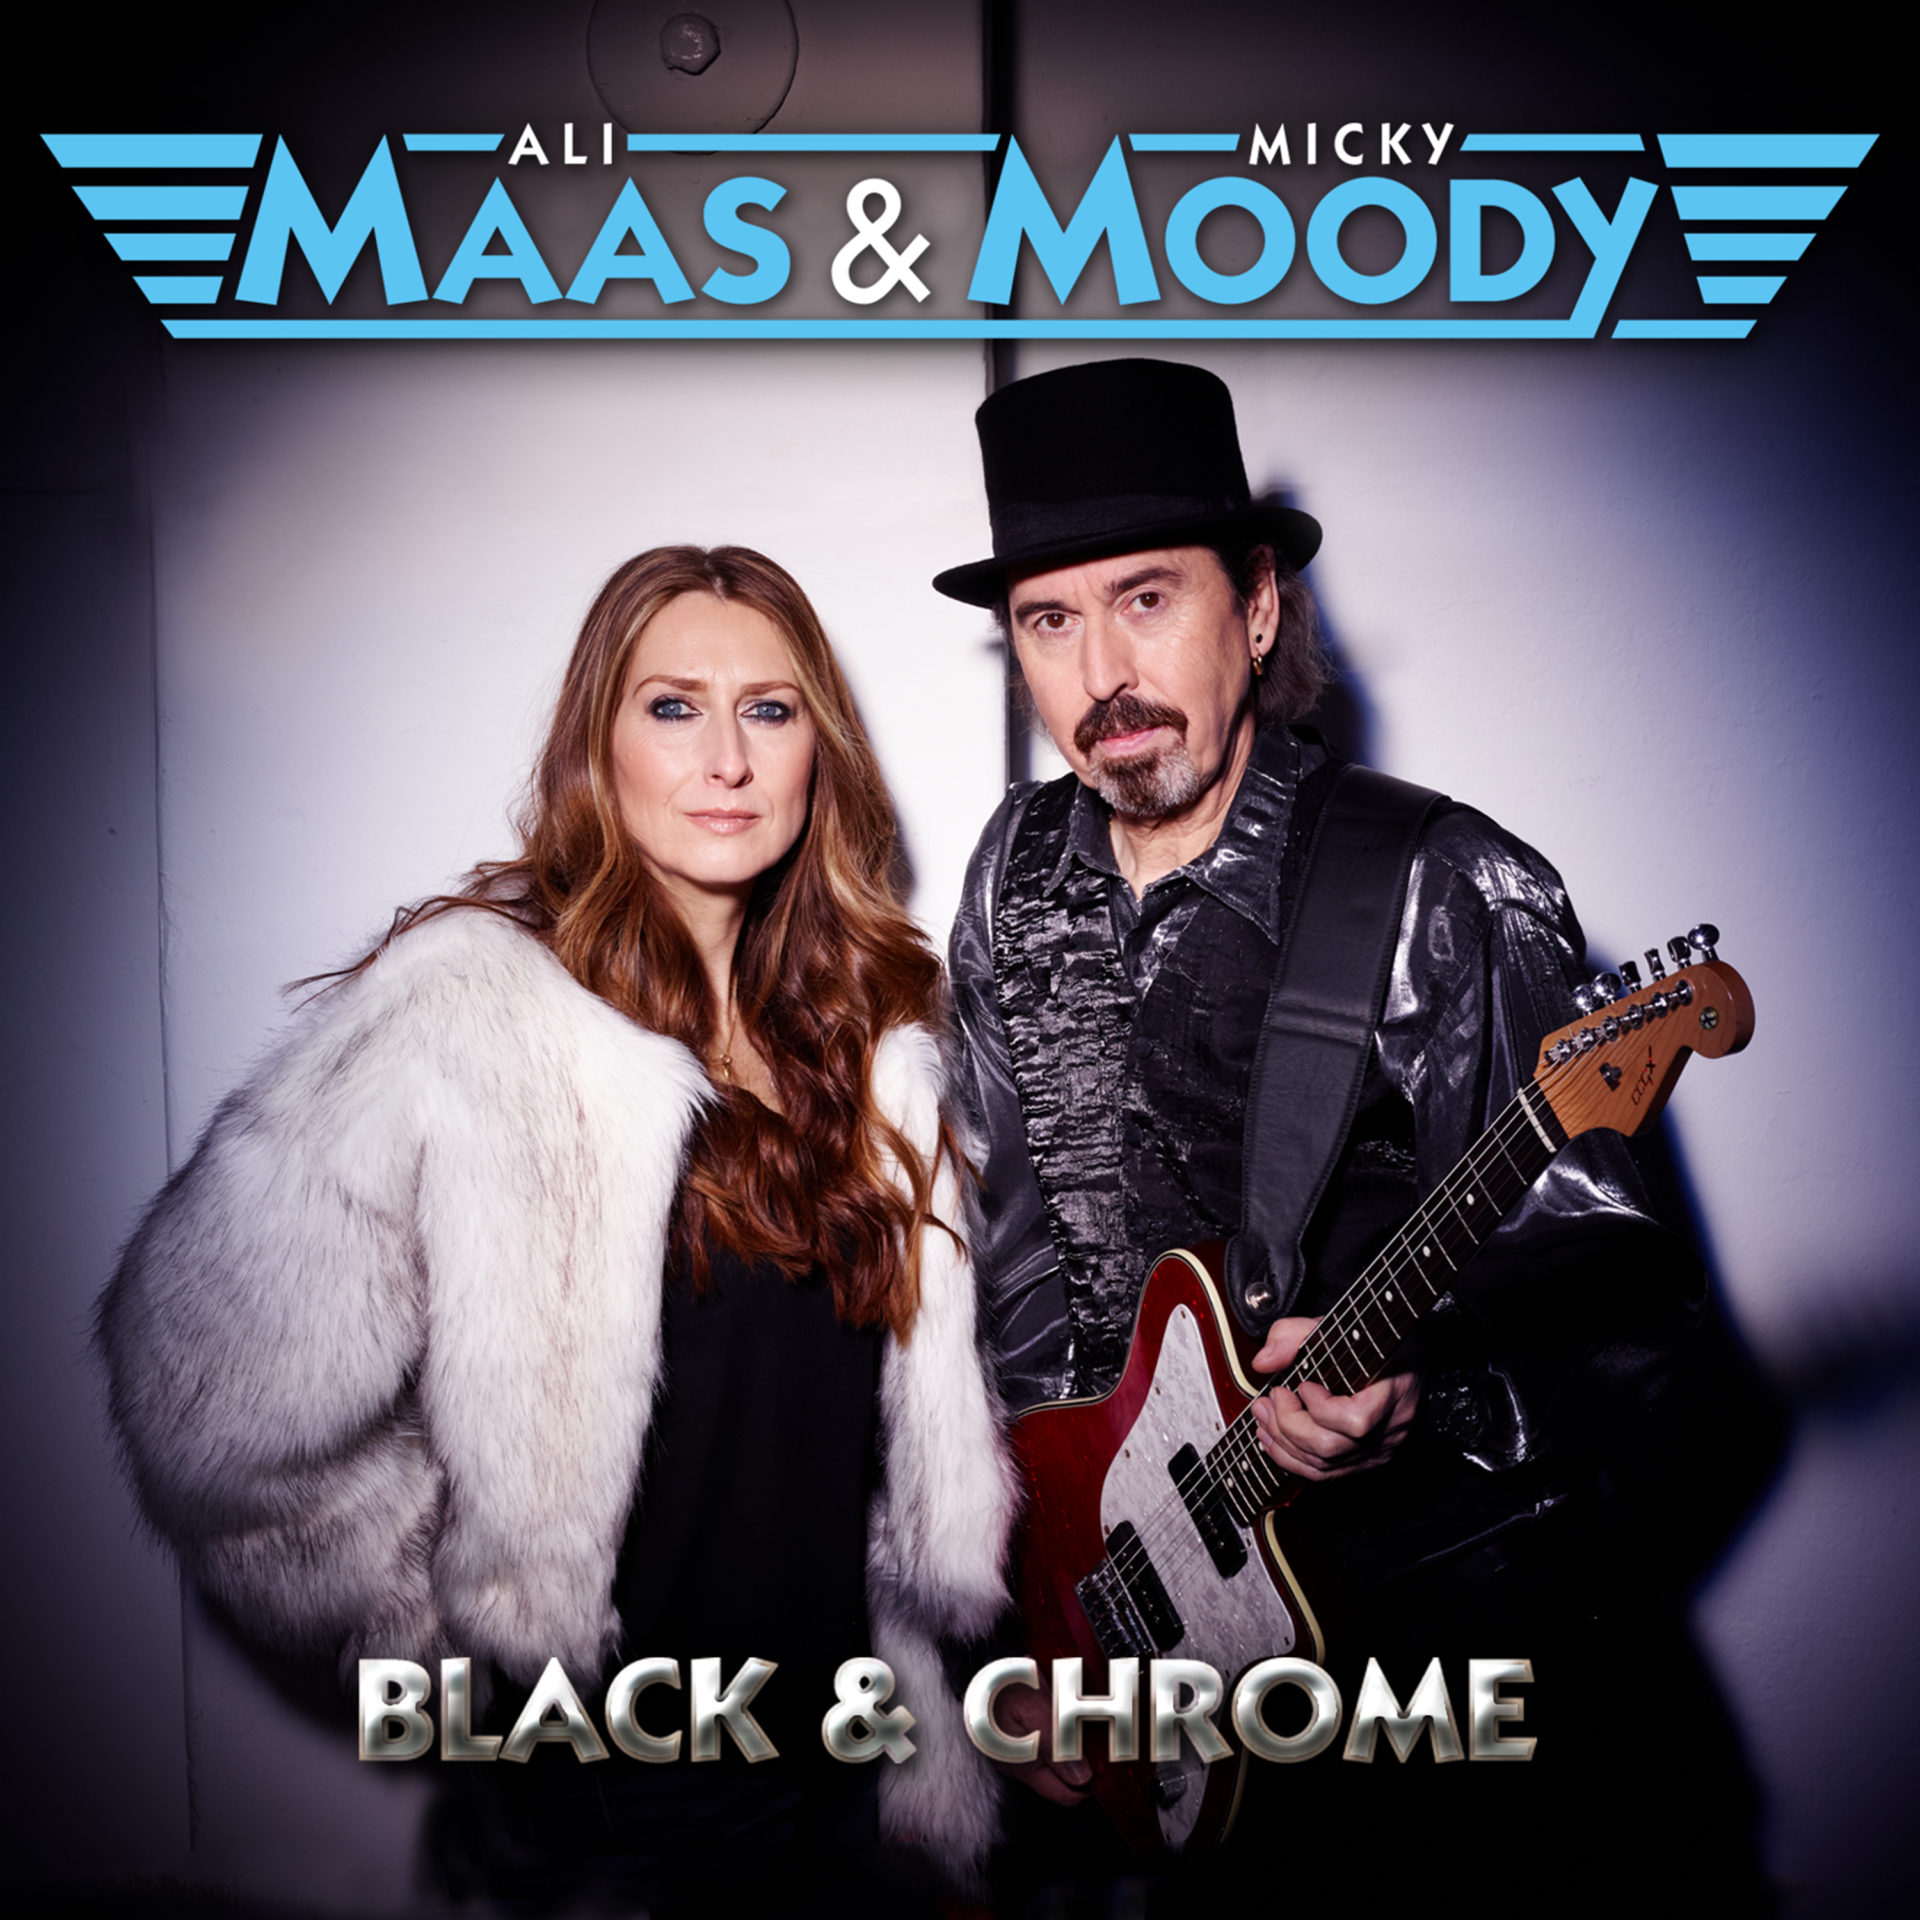 Maas & Moody Go Backstage